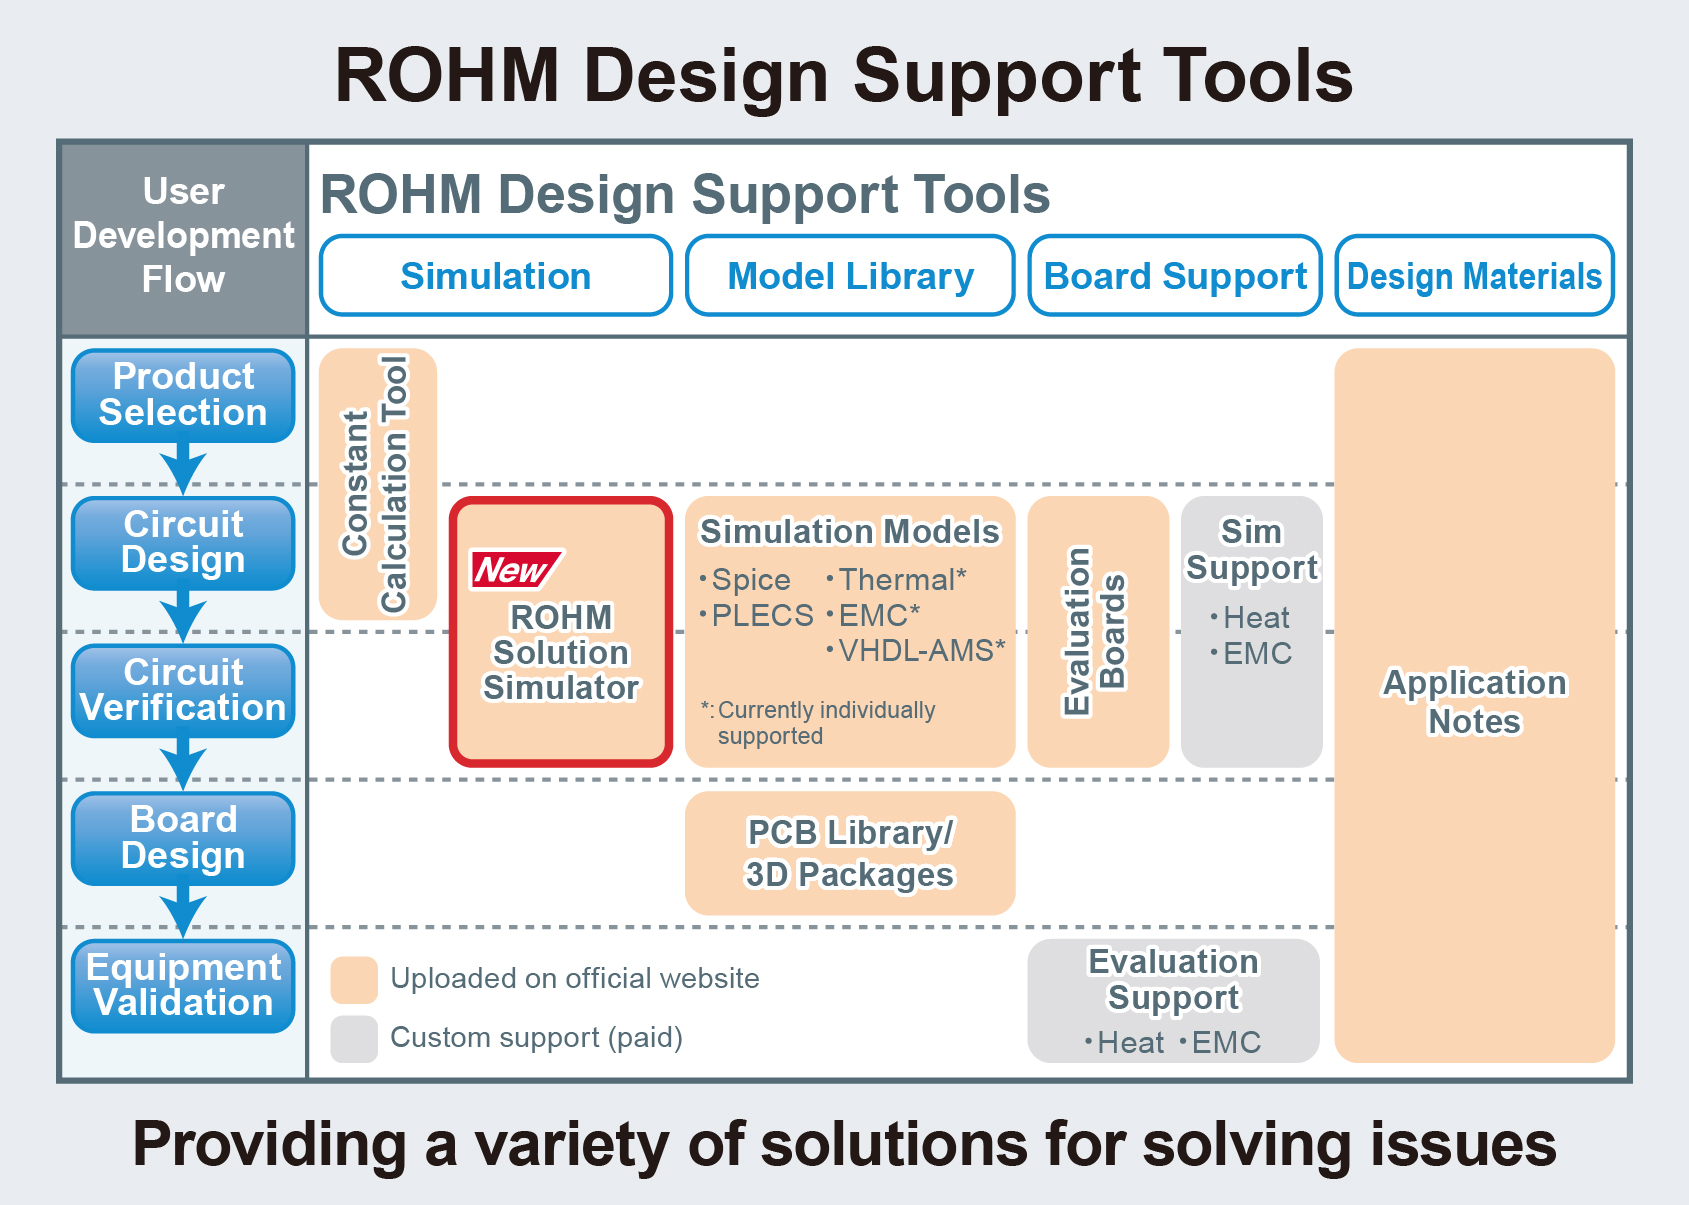 ROHM's Design Support Tools